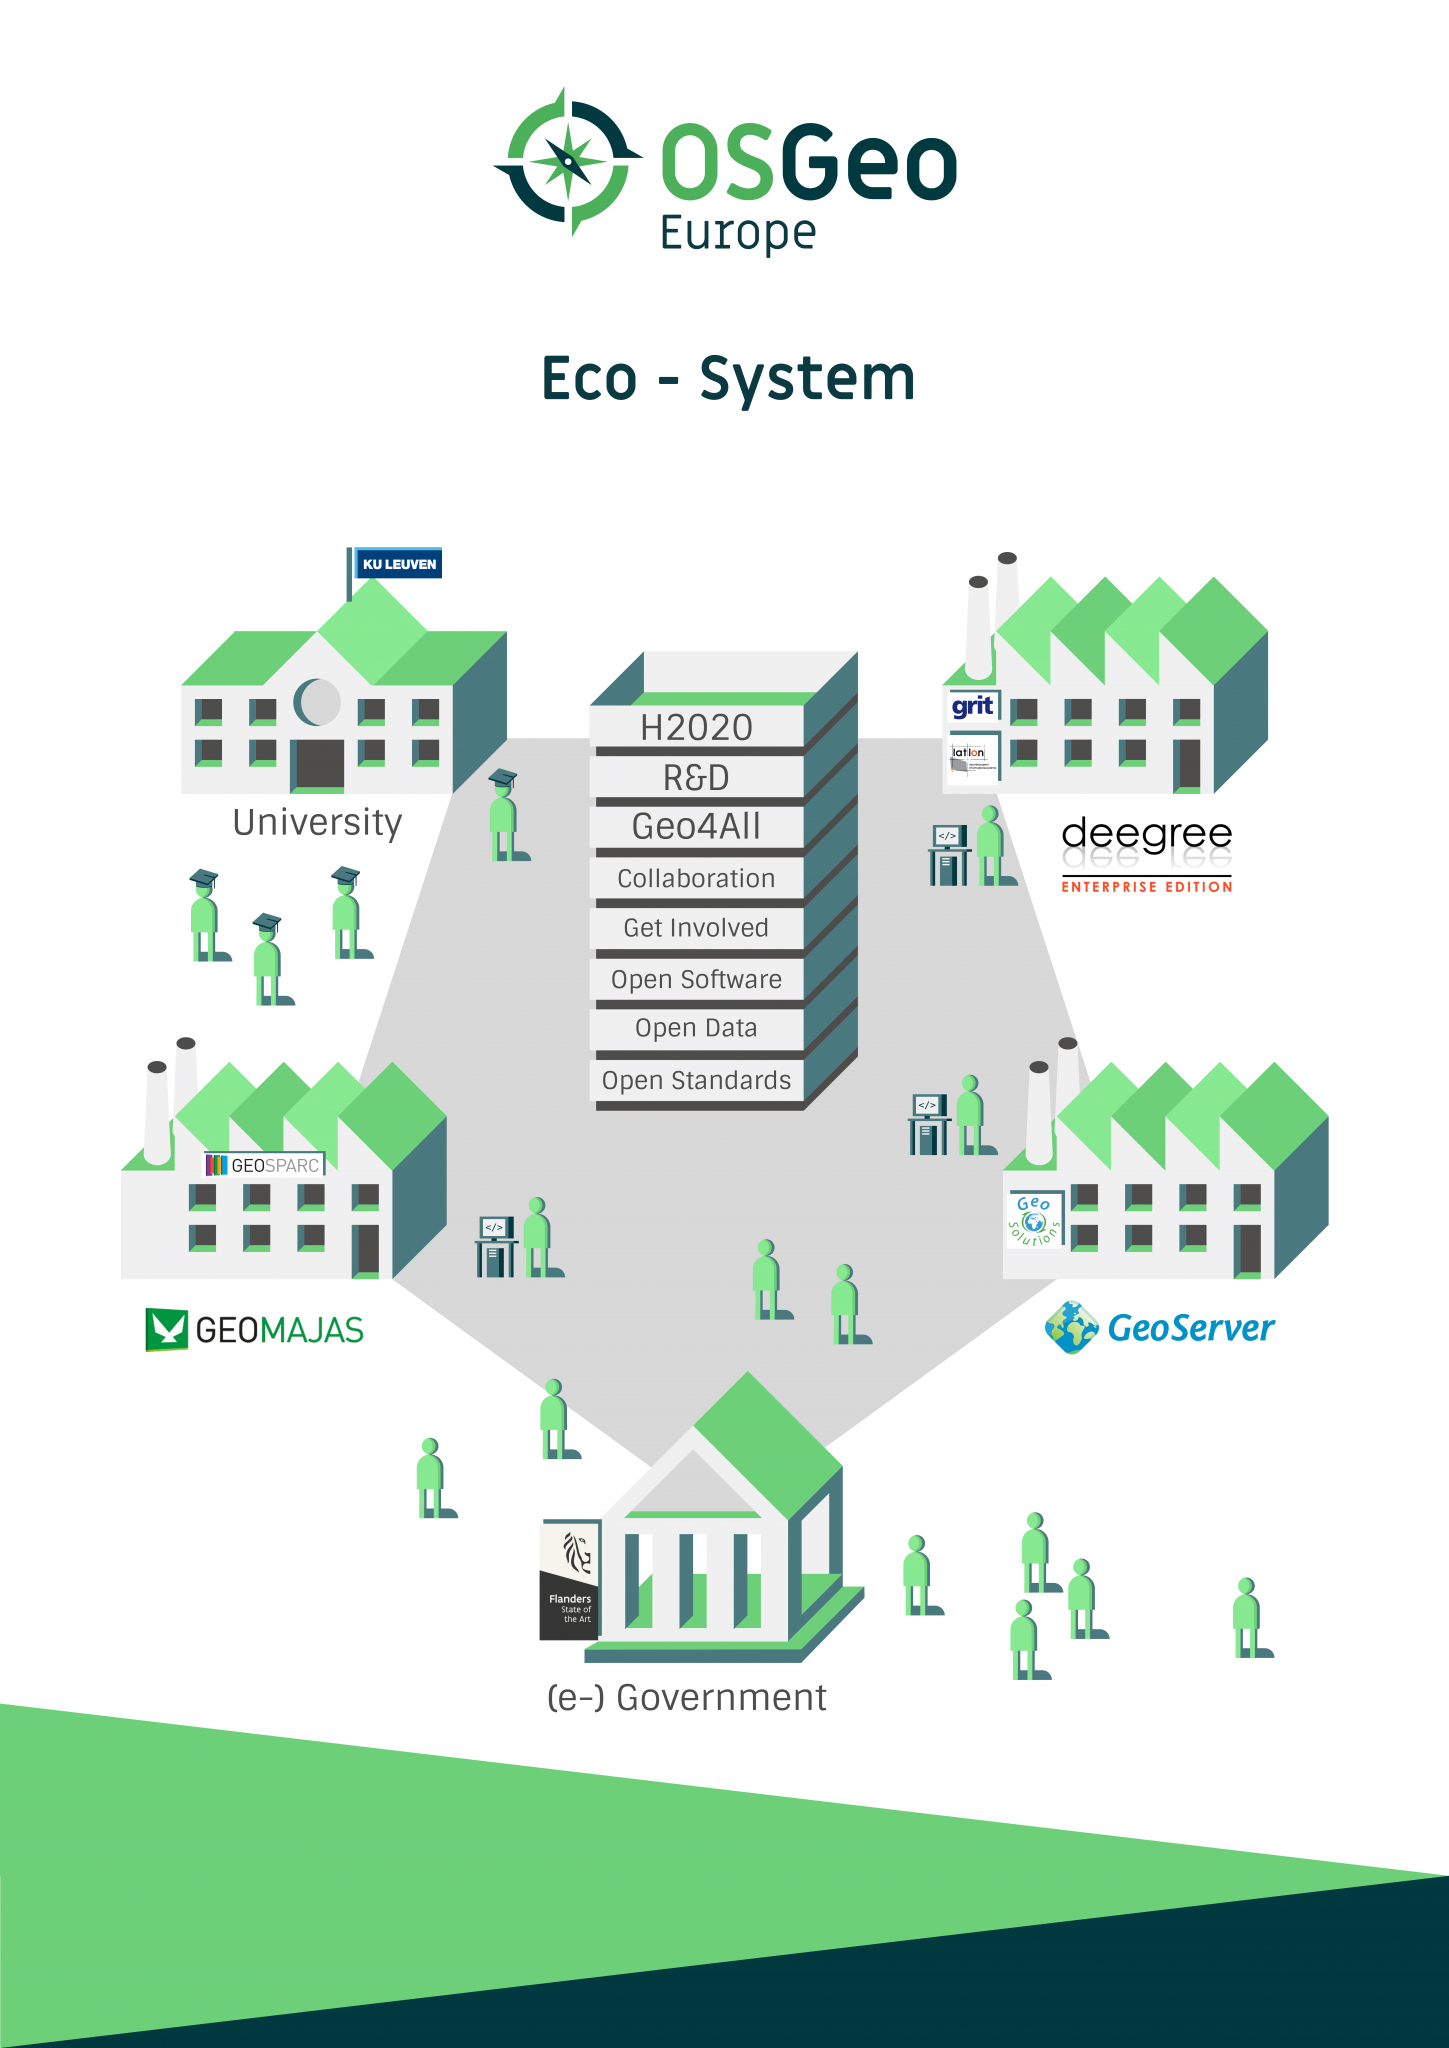 OSGeo European ecosystem